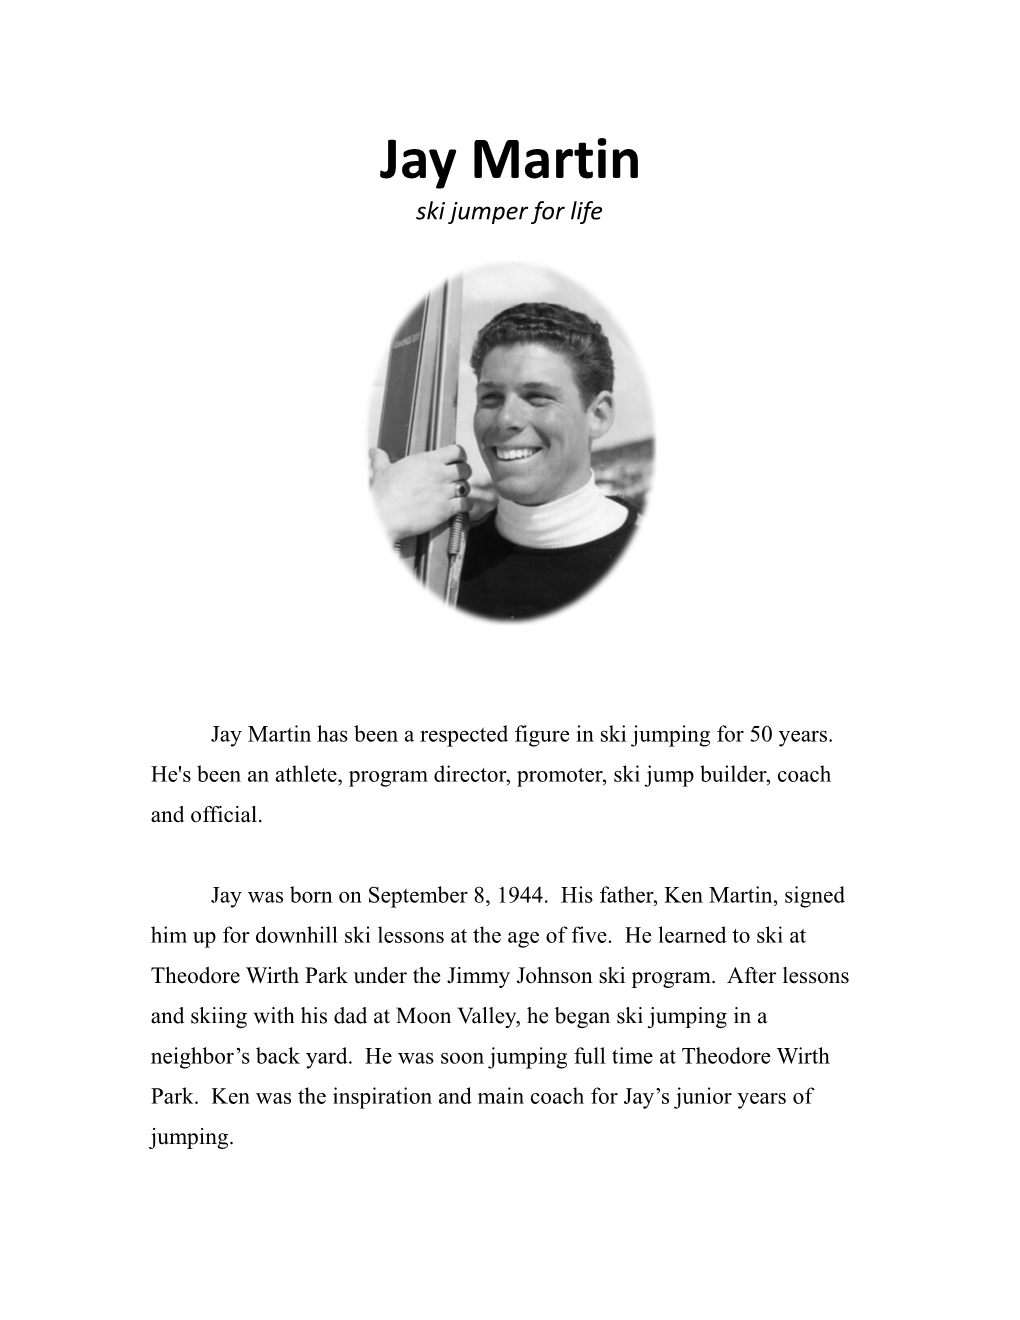 Jay Martin Ski Jumper for Life